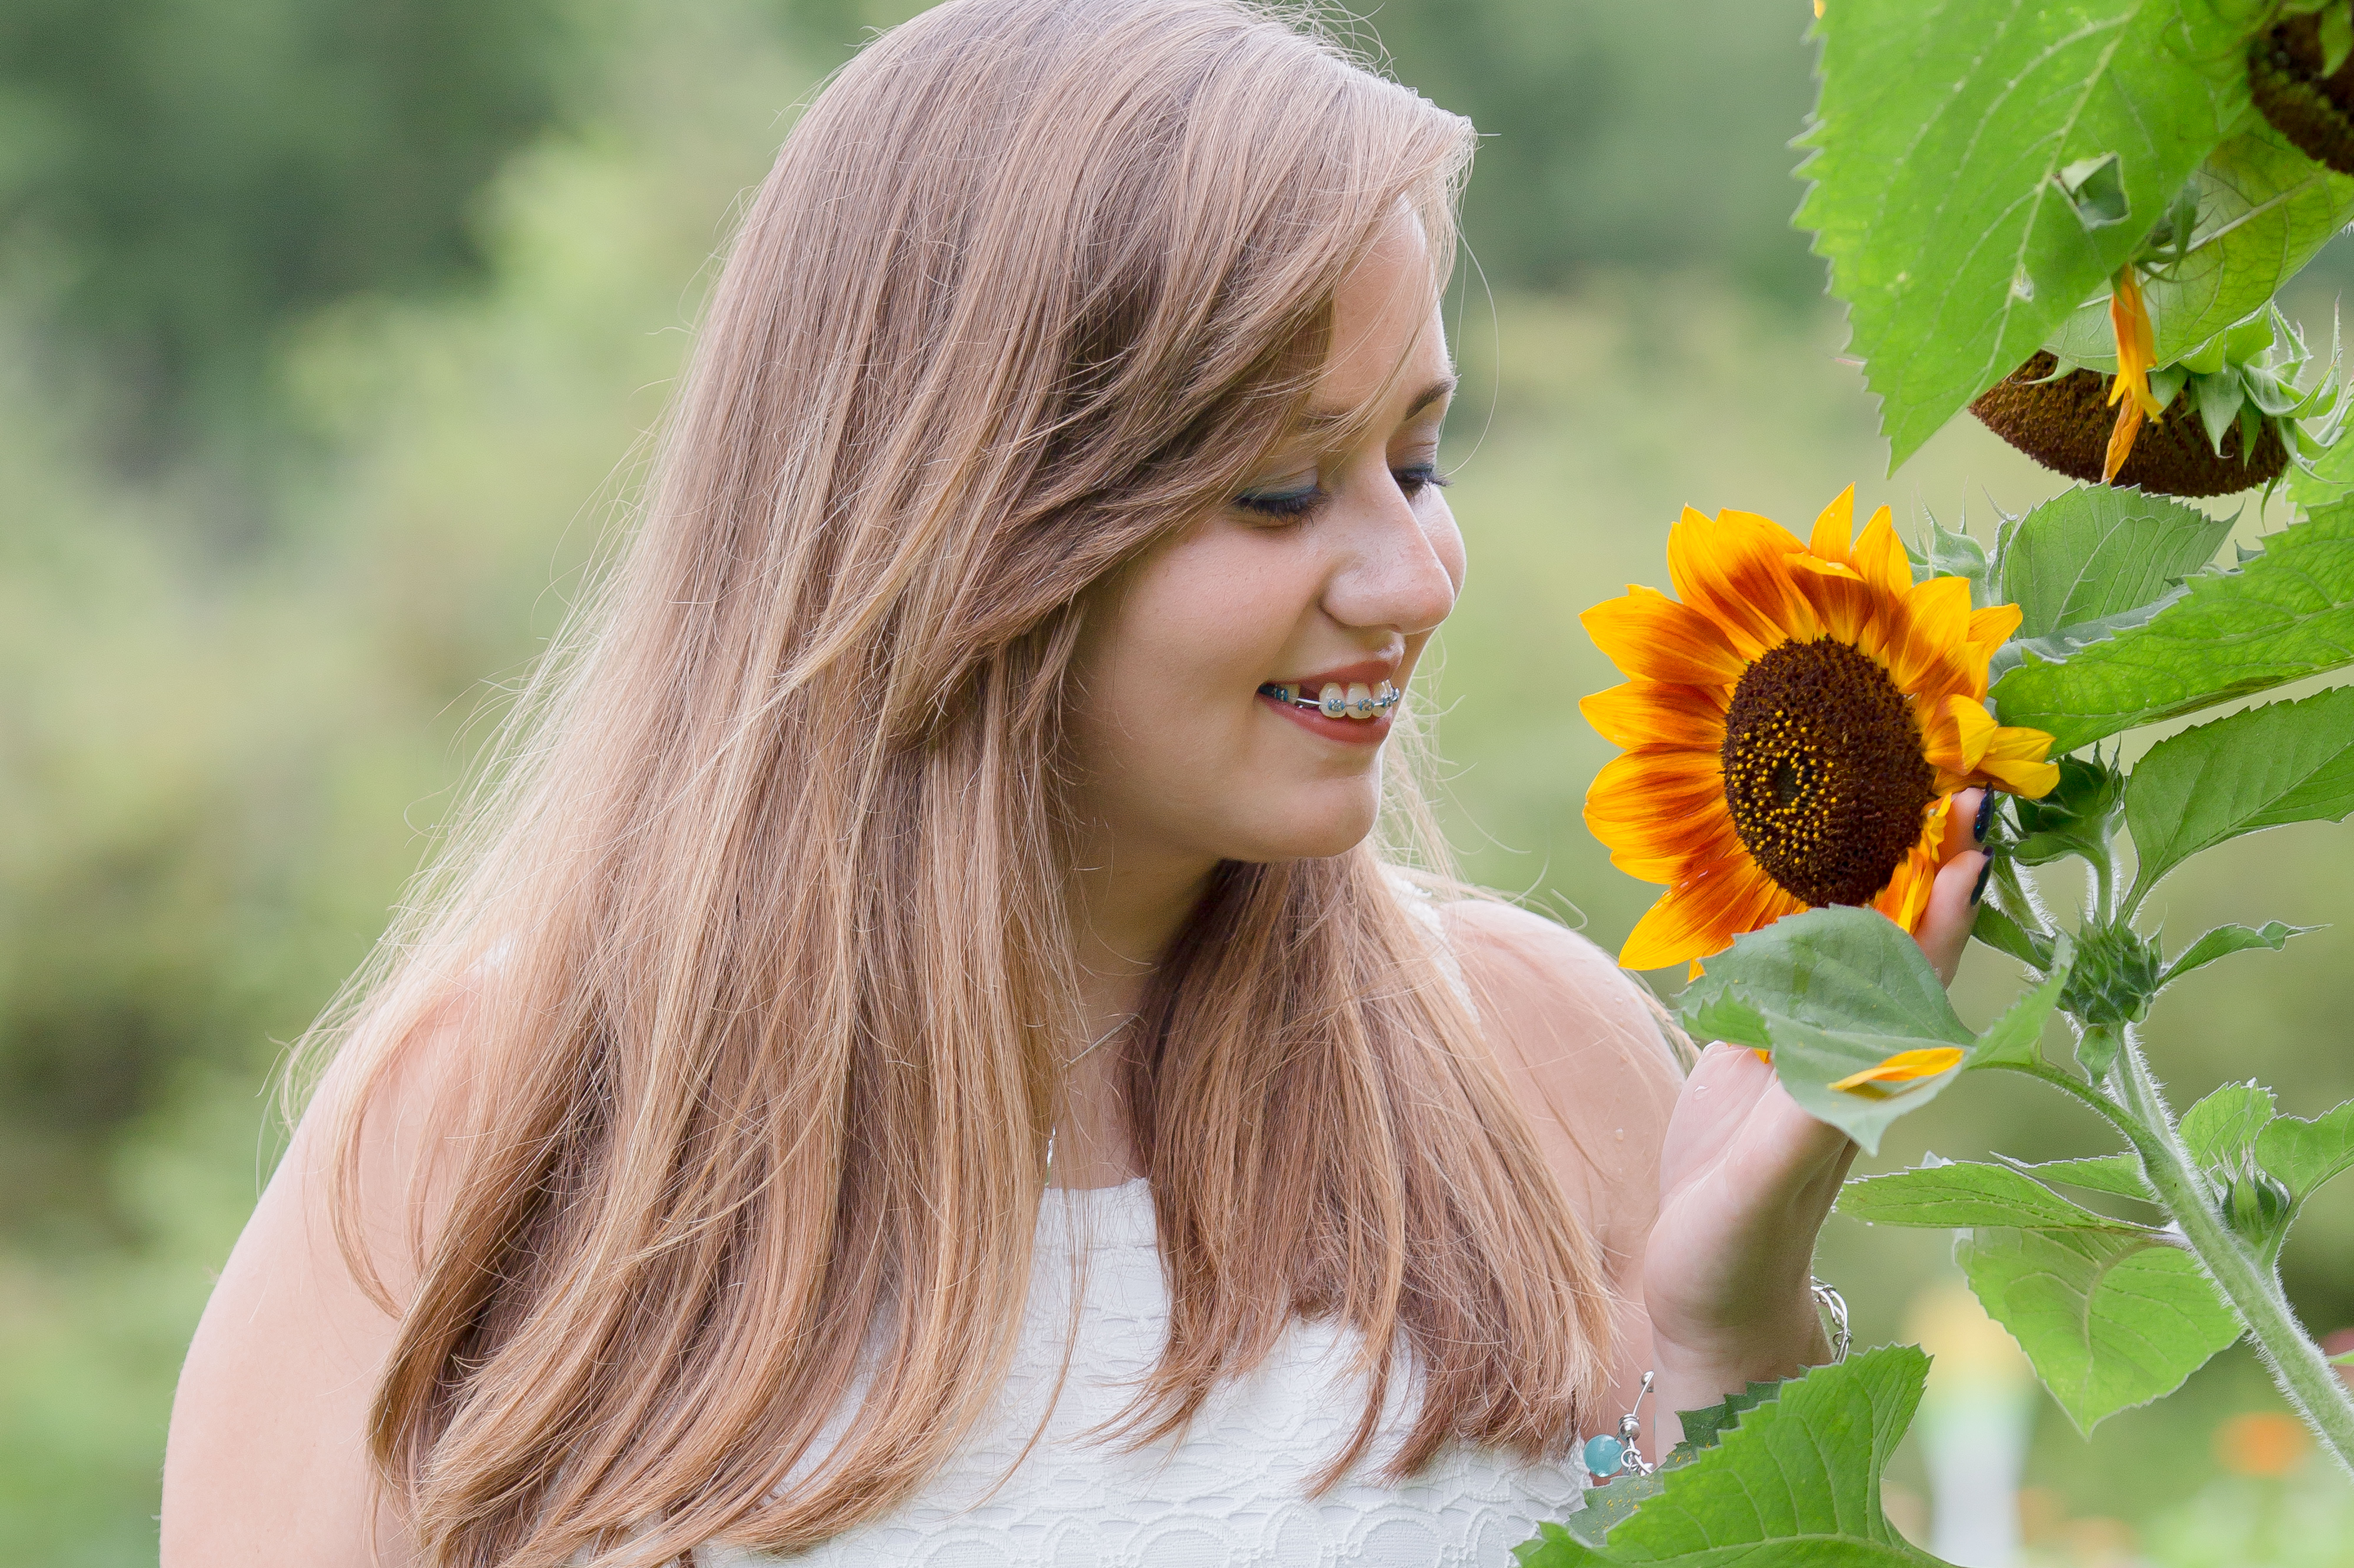 senior girl smells a sunflower in the garden